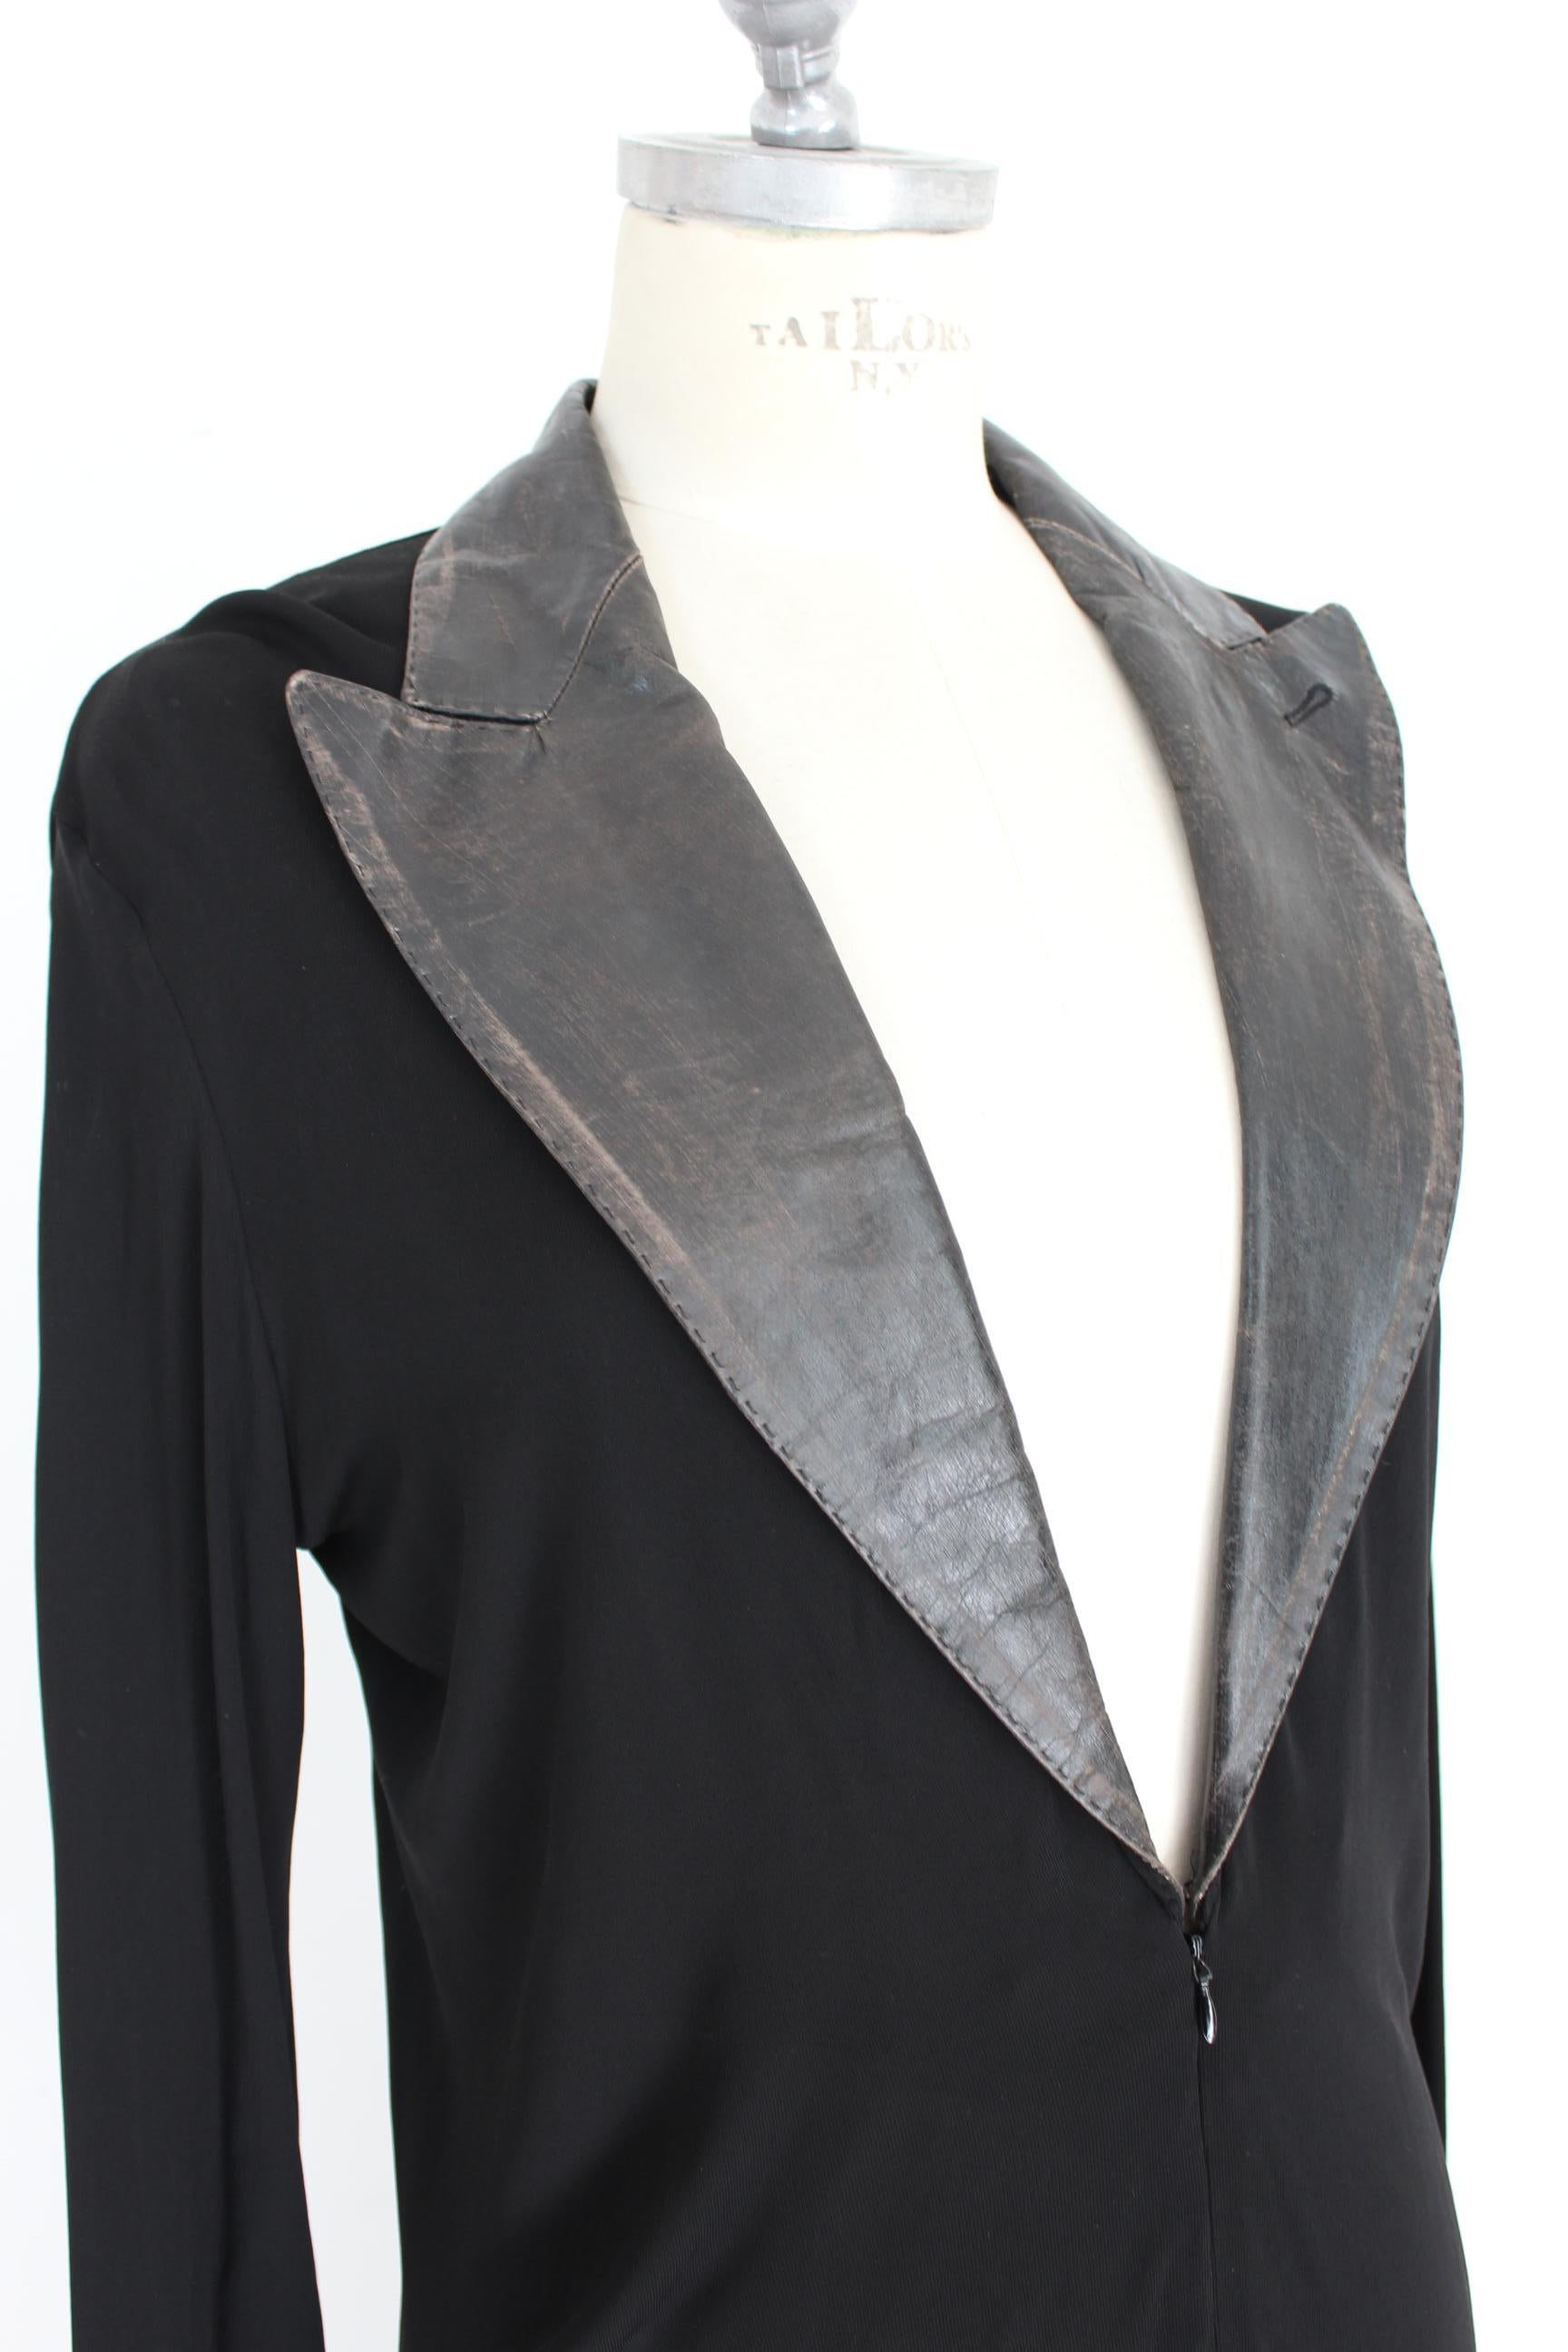 Jean Paul Gaultier Black Jumpsuit Leather Plunge V-Neck Collar Elegant 1990s 2